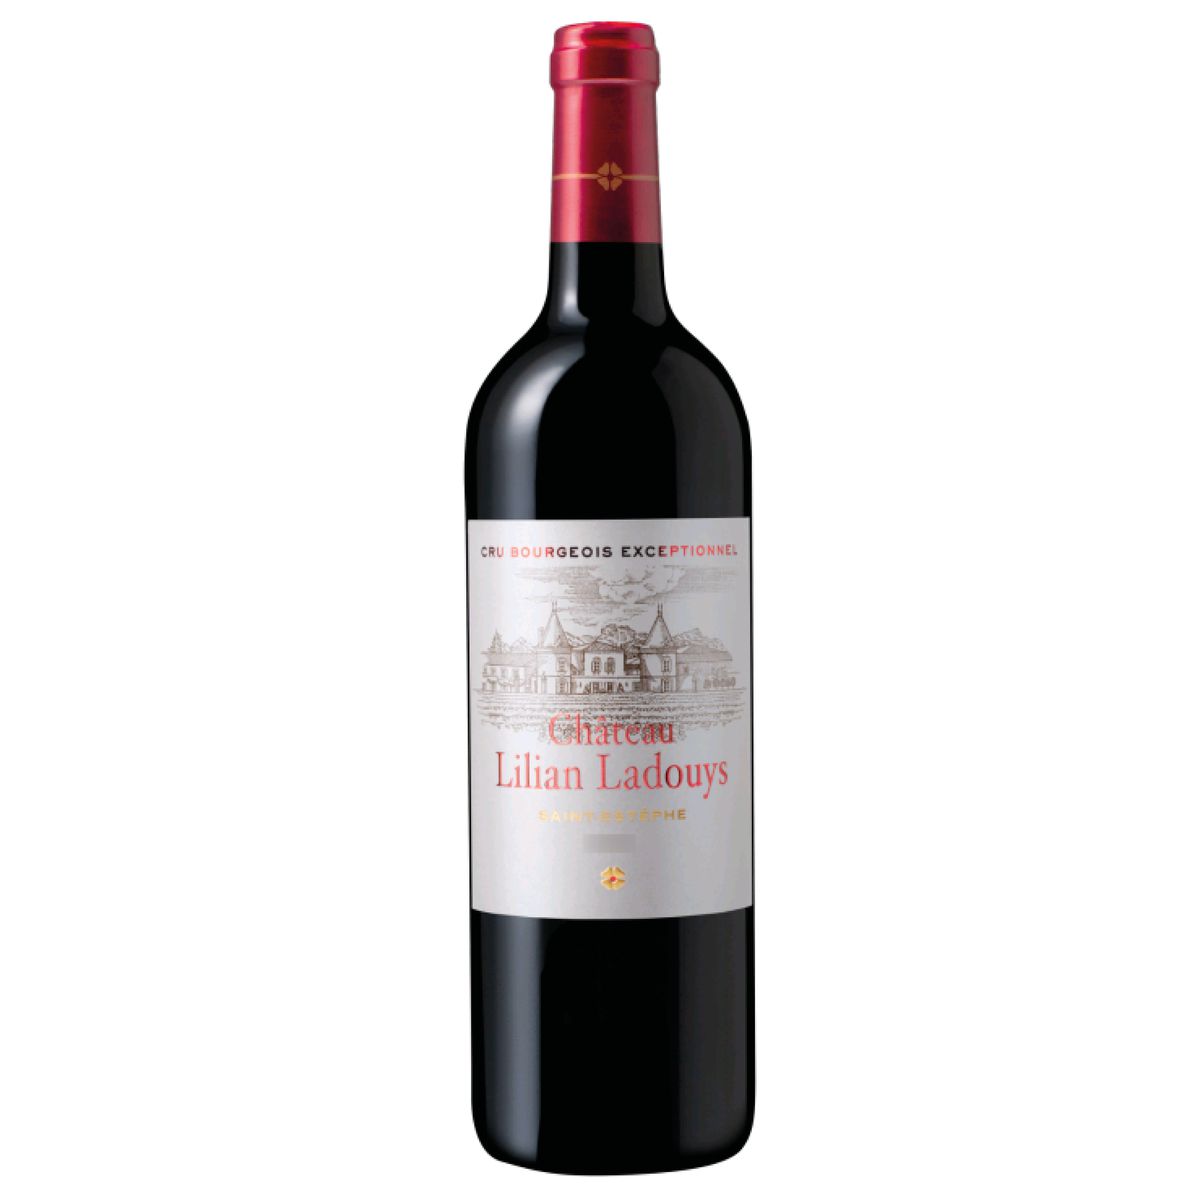 Vin rouge AOP Saint-Estèphe Château Lilian Ladouys cru bourgeois exceptionnel 2019 75cl